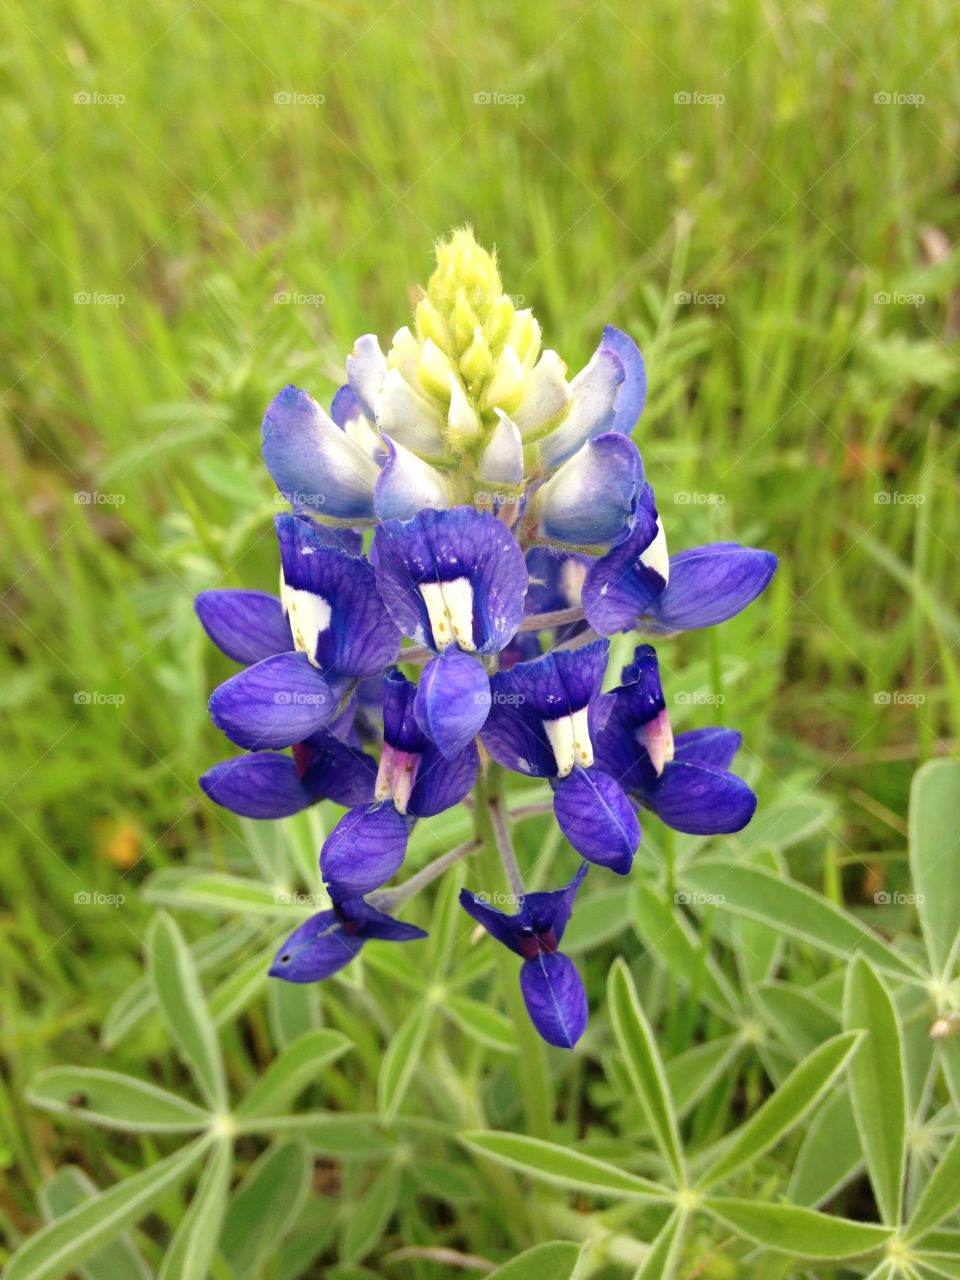 Texas Blue Bonnet wildflower.